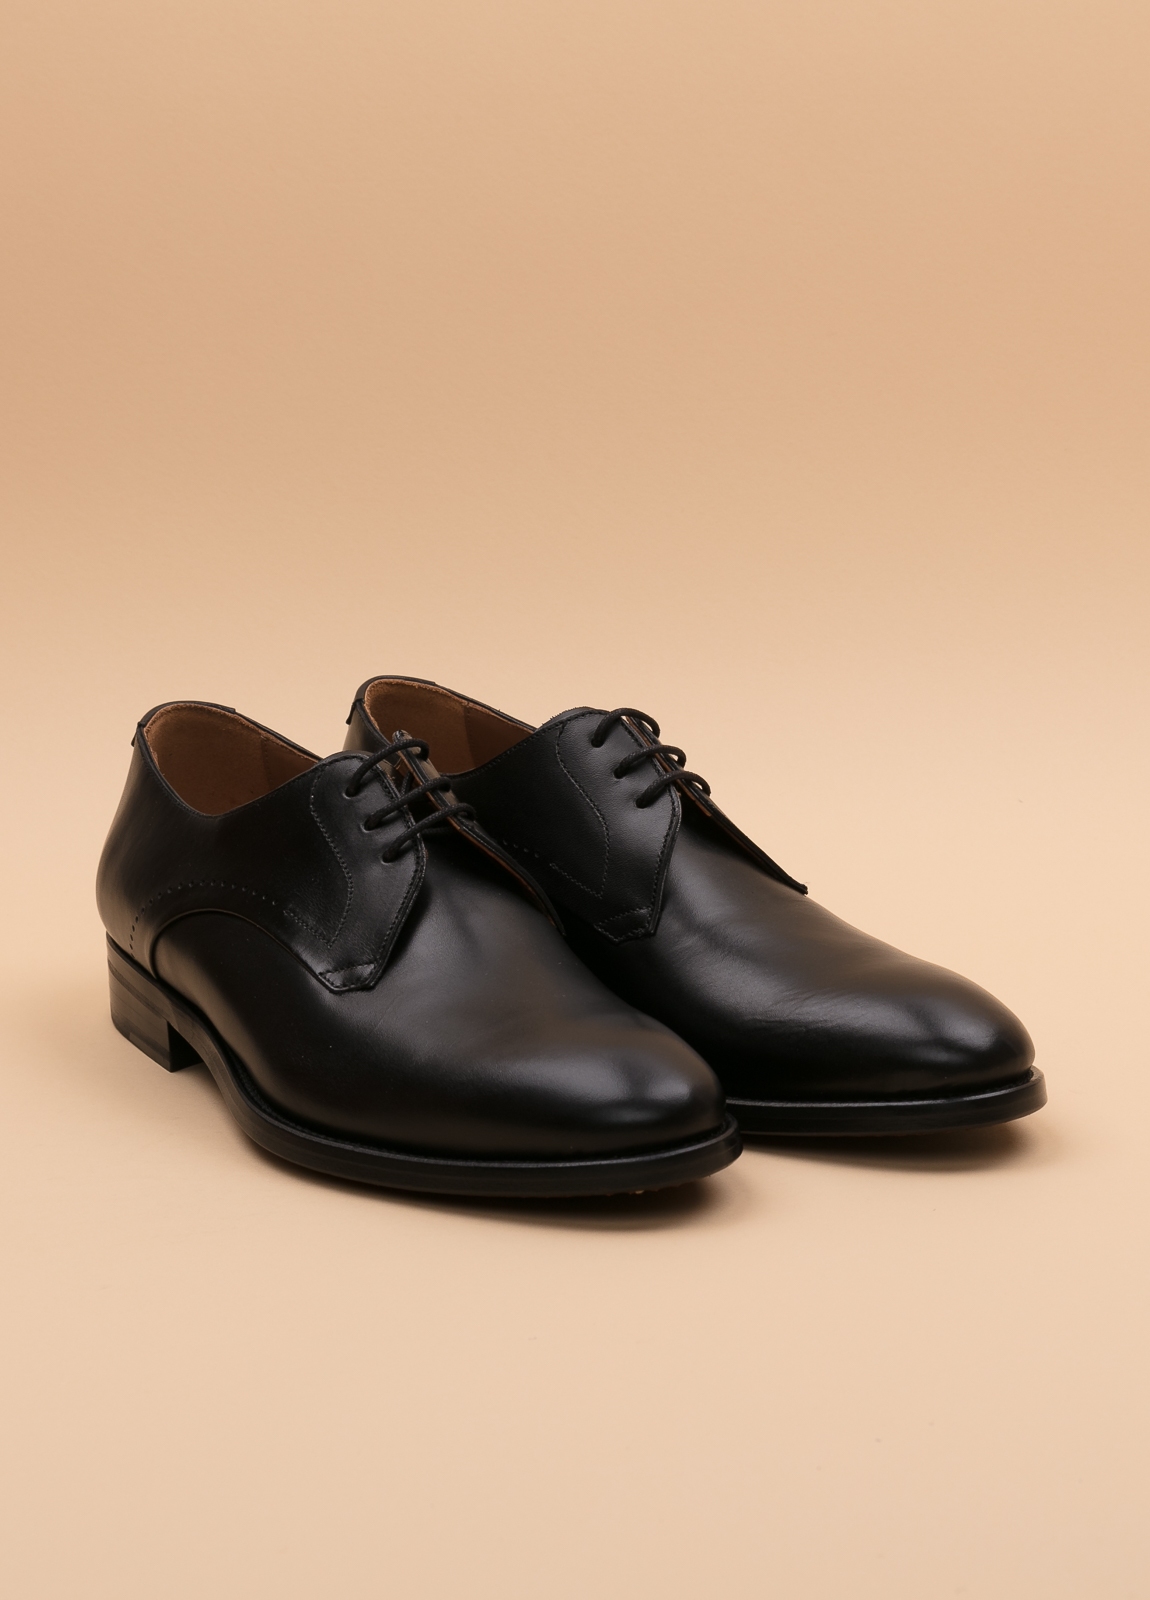 Zapato Formal Wear FUREST COLECCIÓN negro - Ítem1